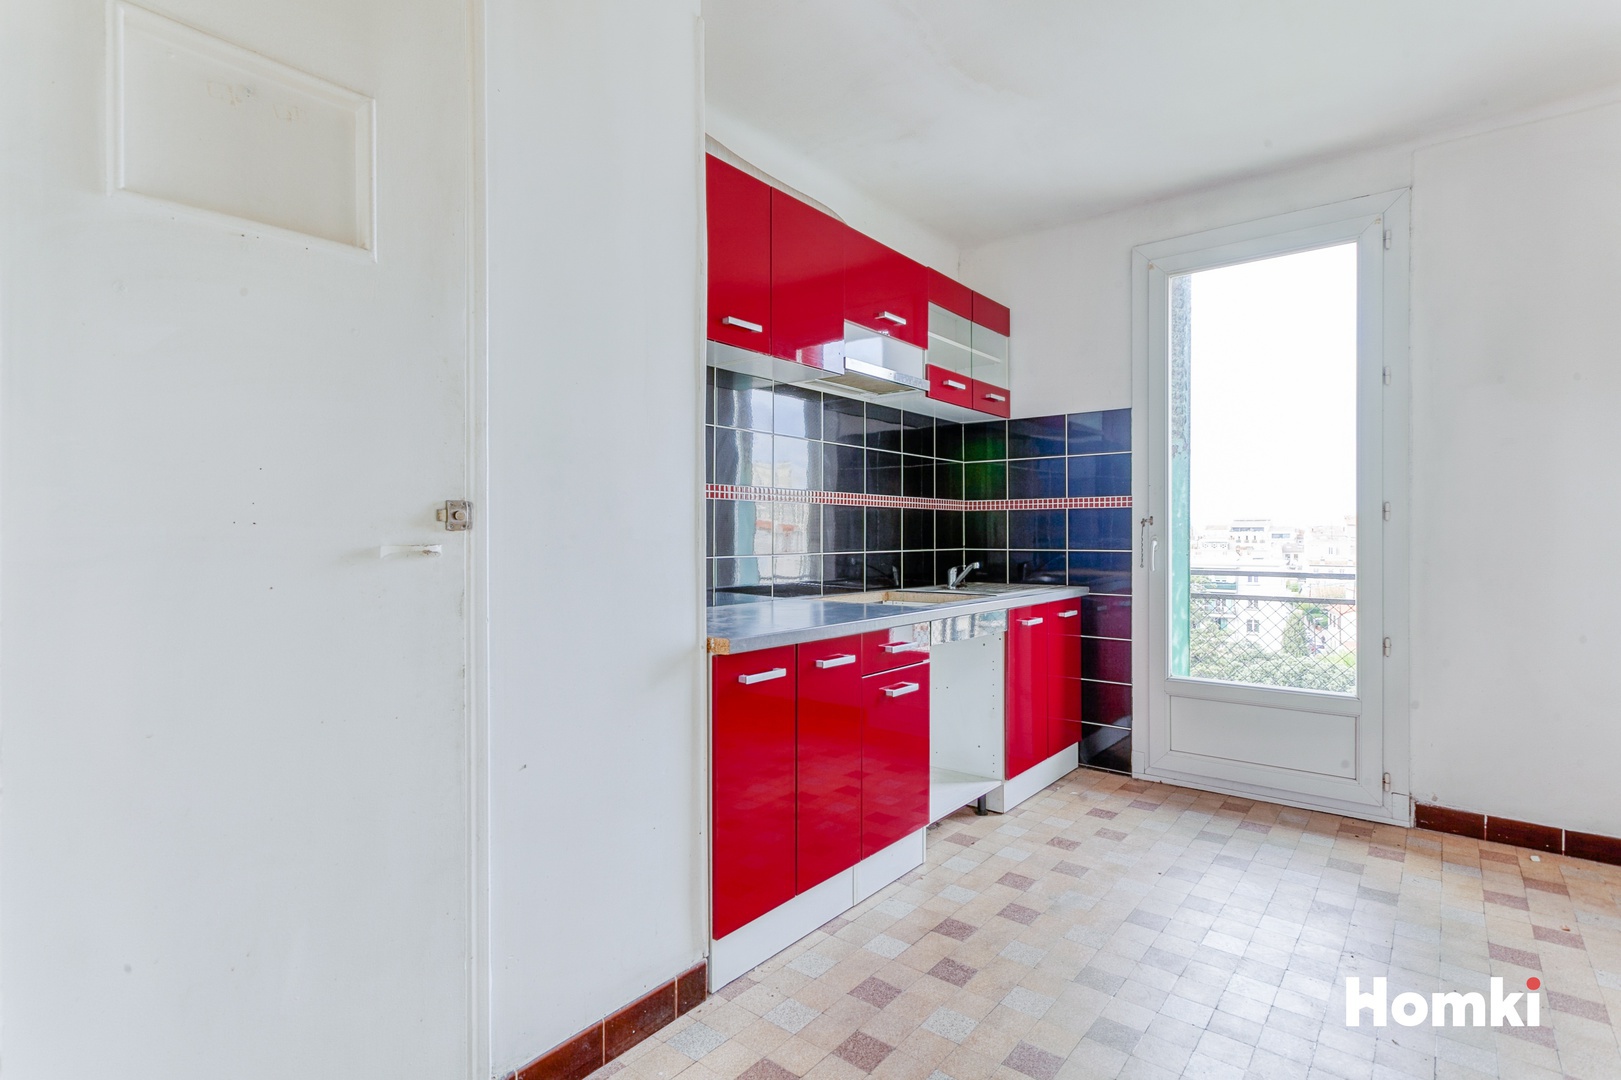 Homki - Vente Appartement  de 63.0 m² à Marseille 13007